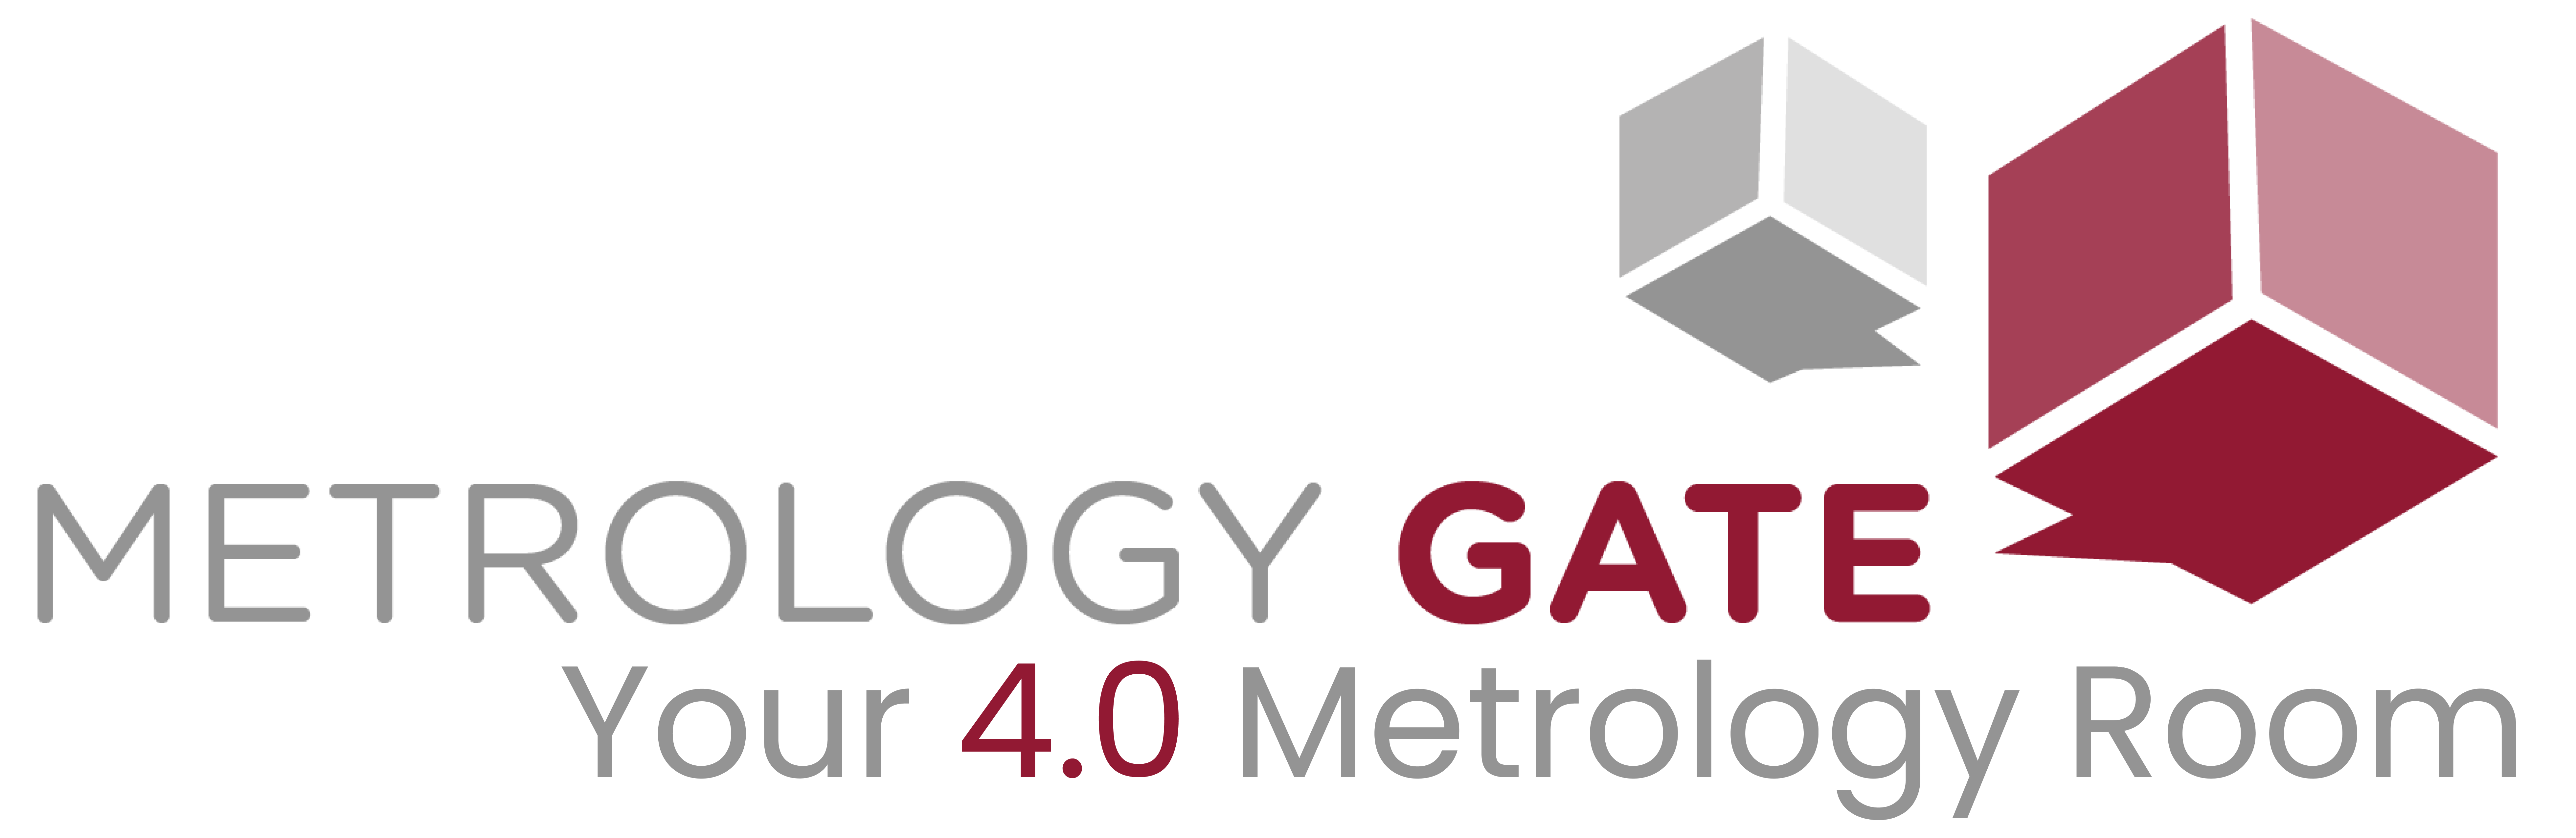 Metrology Gate